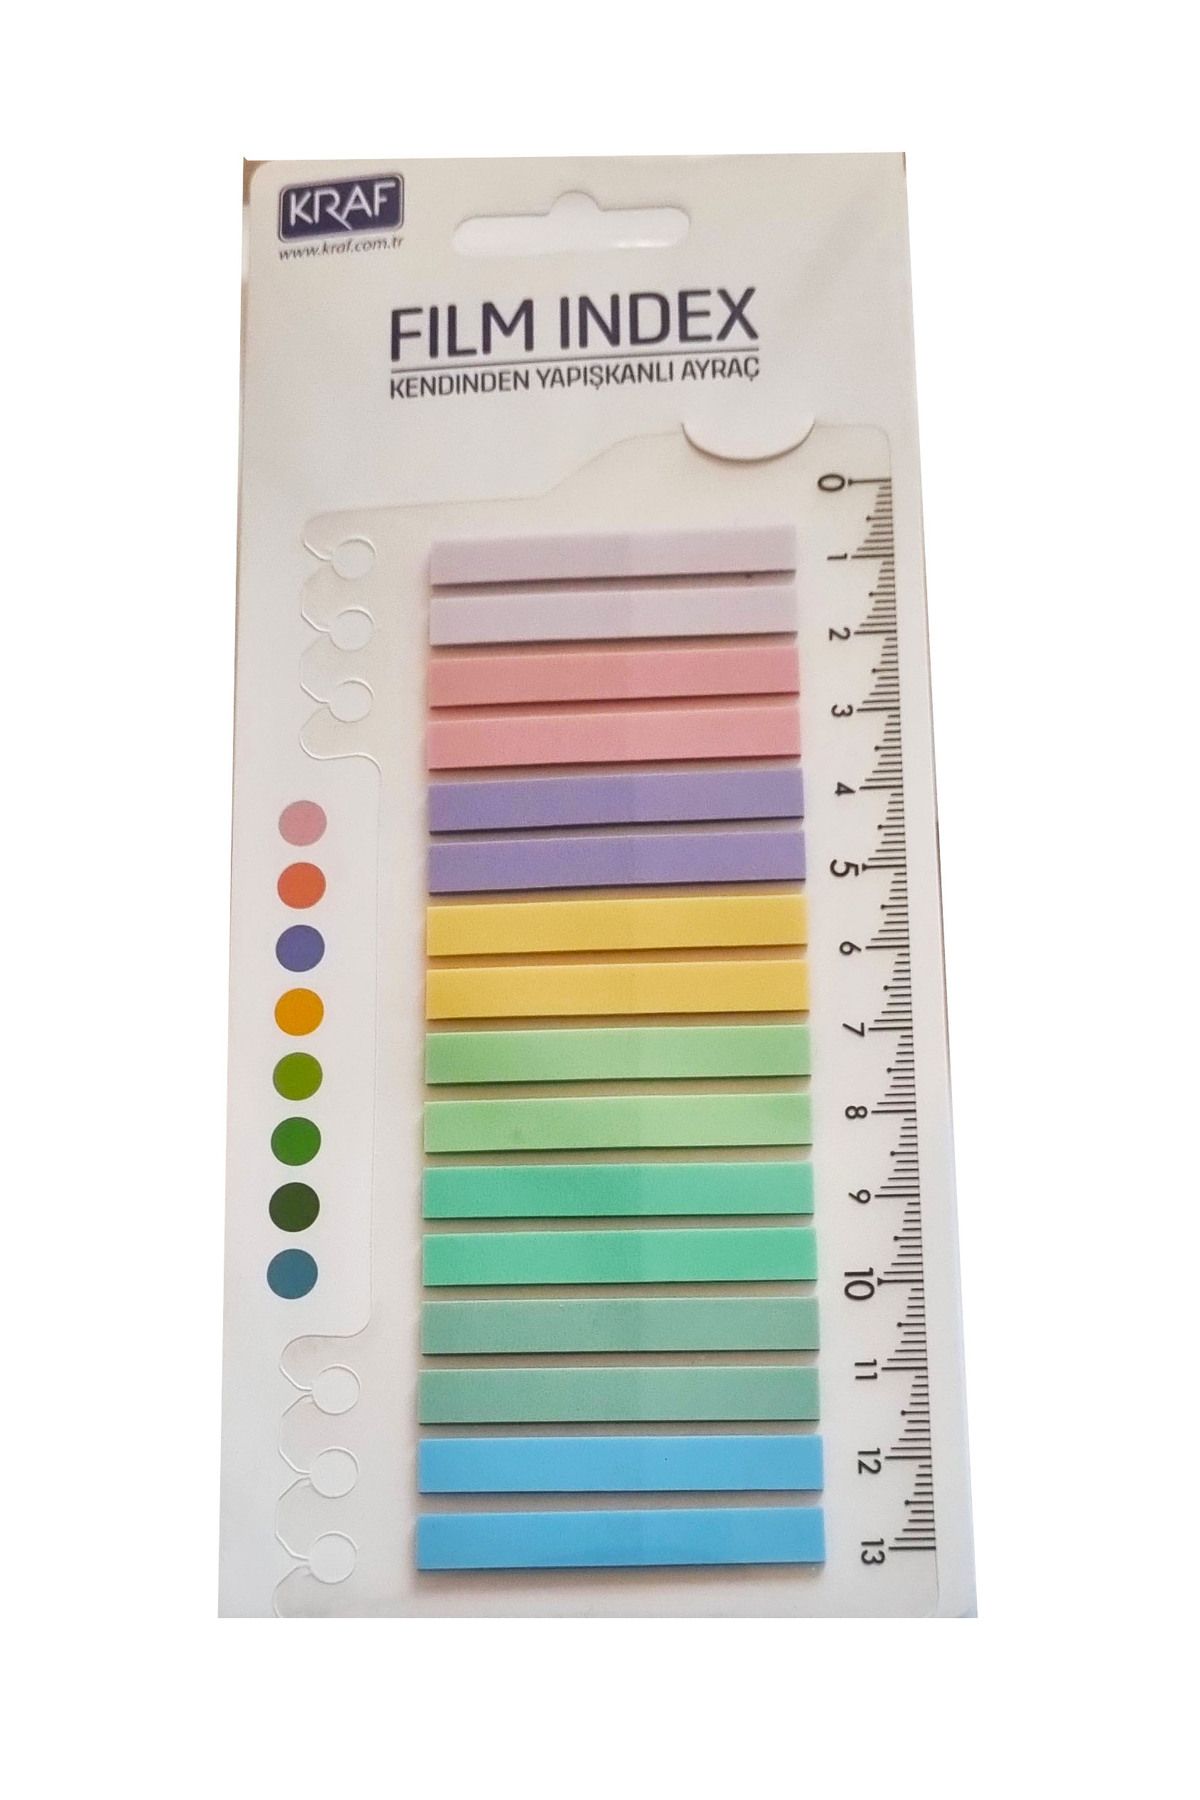 Modellino Film İndex Kraf Cetvelli Kendinden Yapışkanlı Ayraç 8 Renk 20 Sayfa - Renk Seçmeli 1 Paket